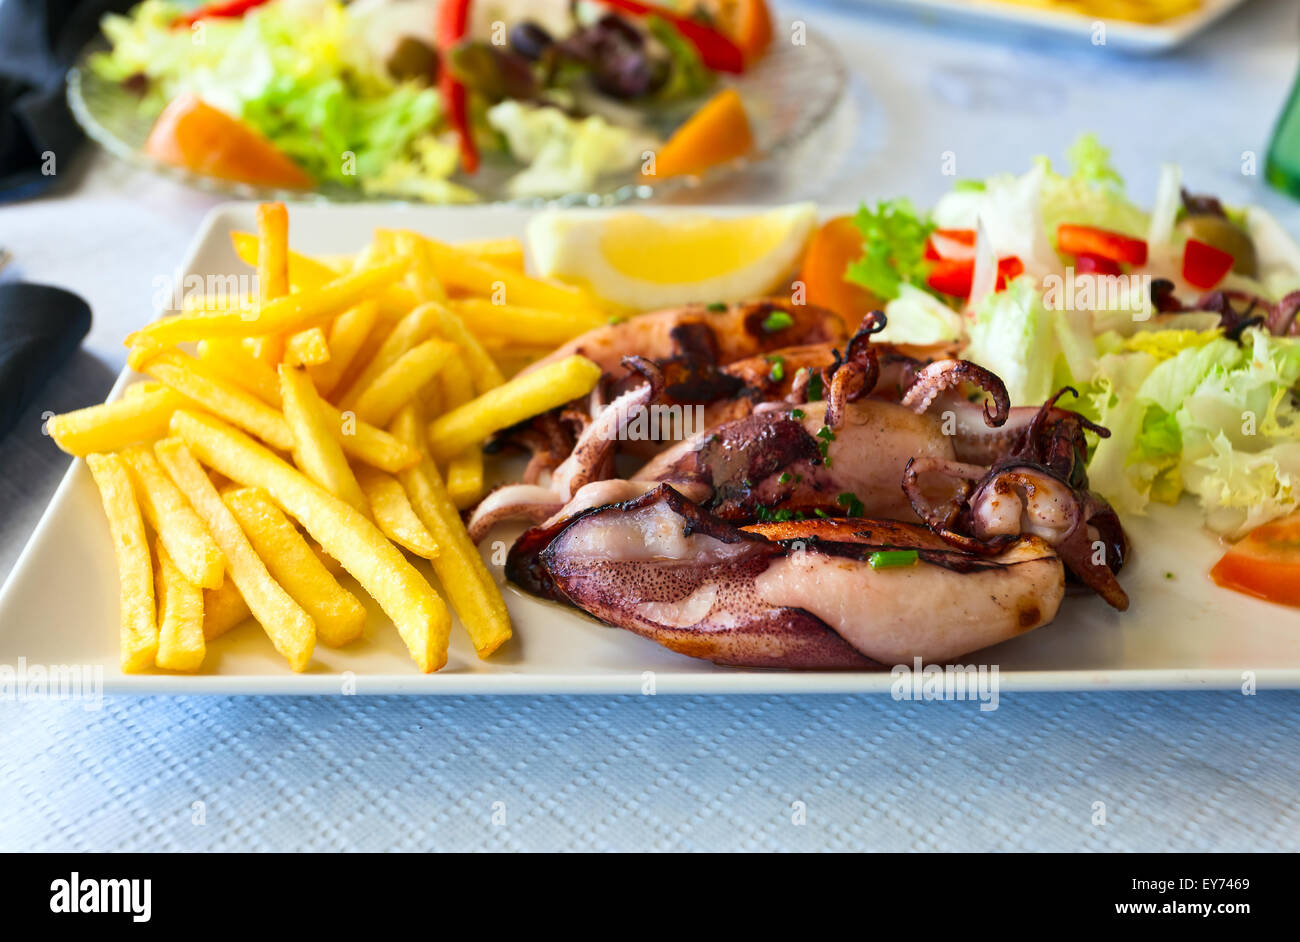 Calamari alla griglia con patate fritte e insalata mista Foto Stock